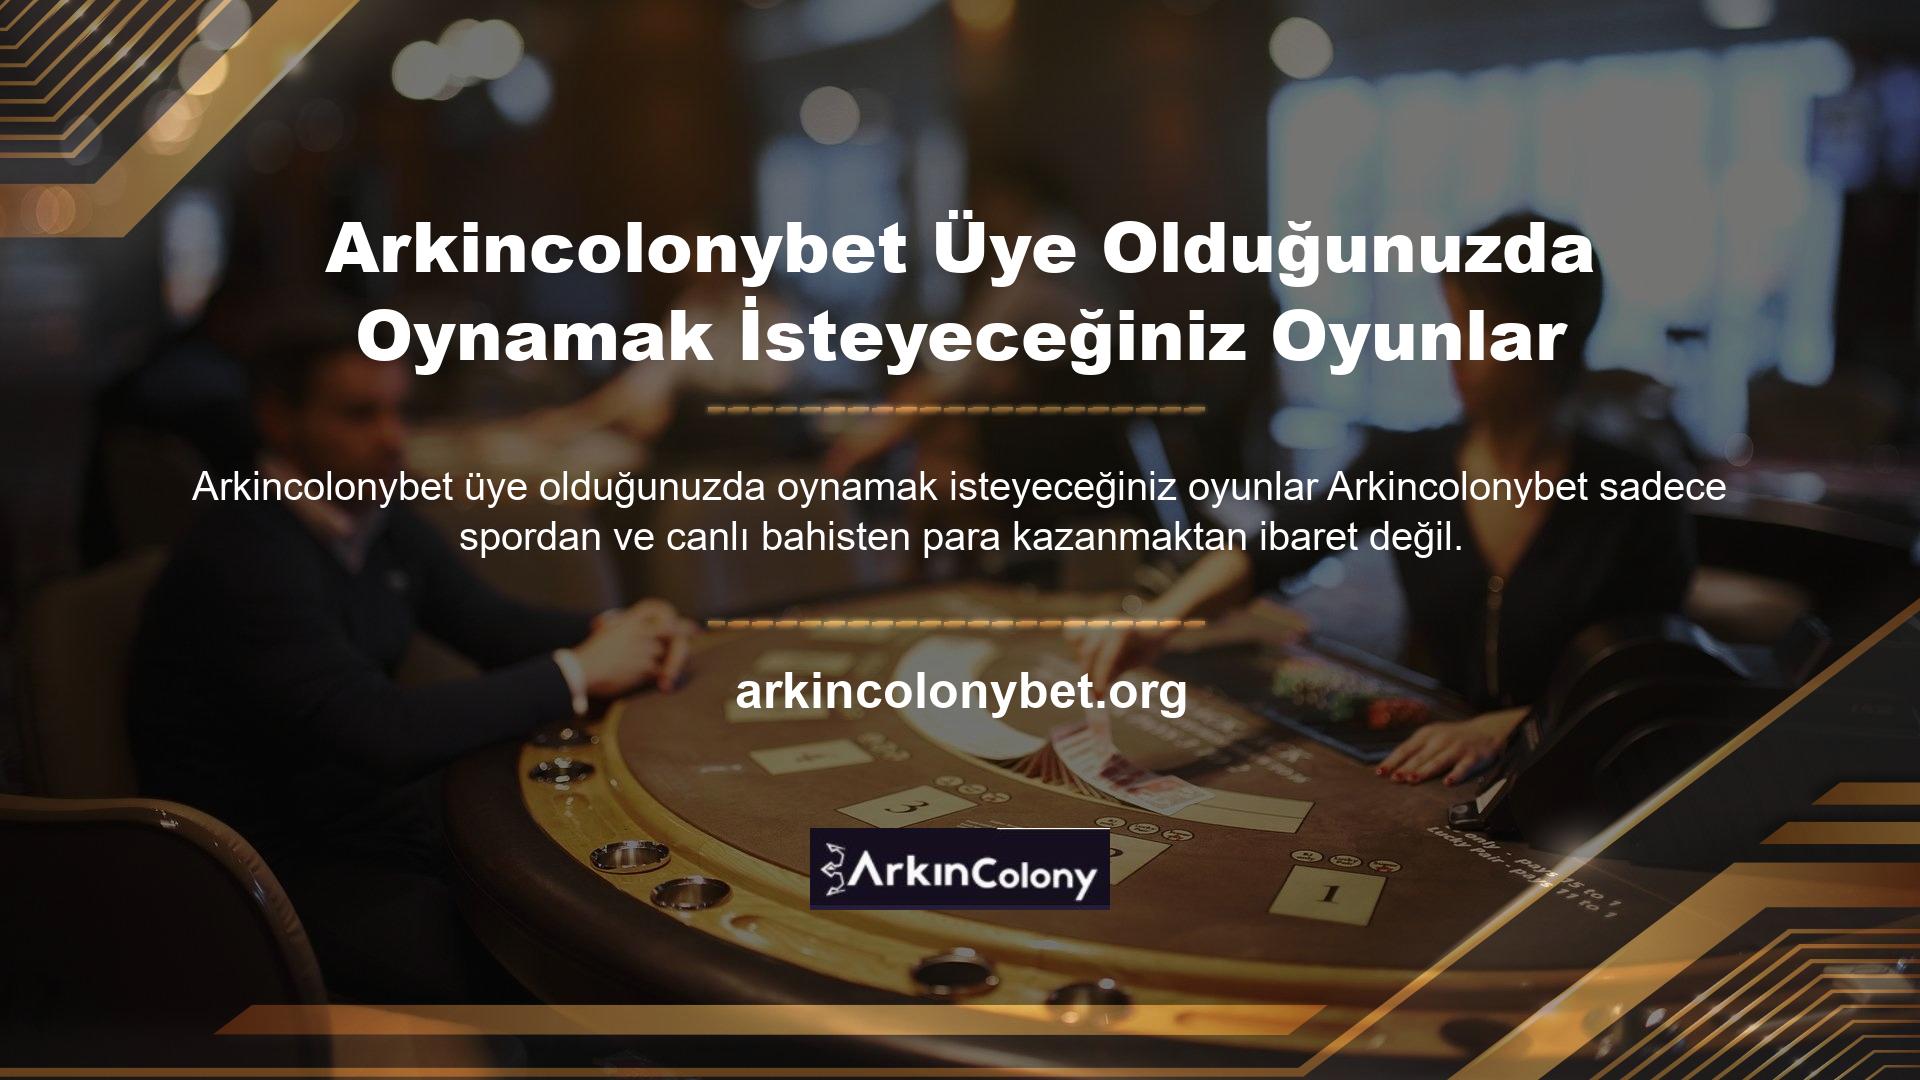 Arkincolonybet aynı zamanda casino oyunlarından keyif almak, kaliteli zaman geçirmek ve para kazanma şansı elde etmek anlamına da gelmektedir